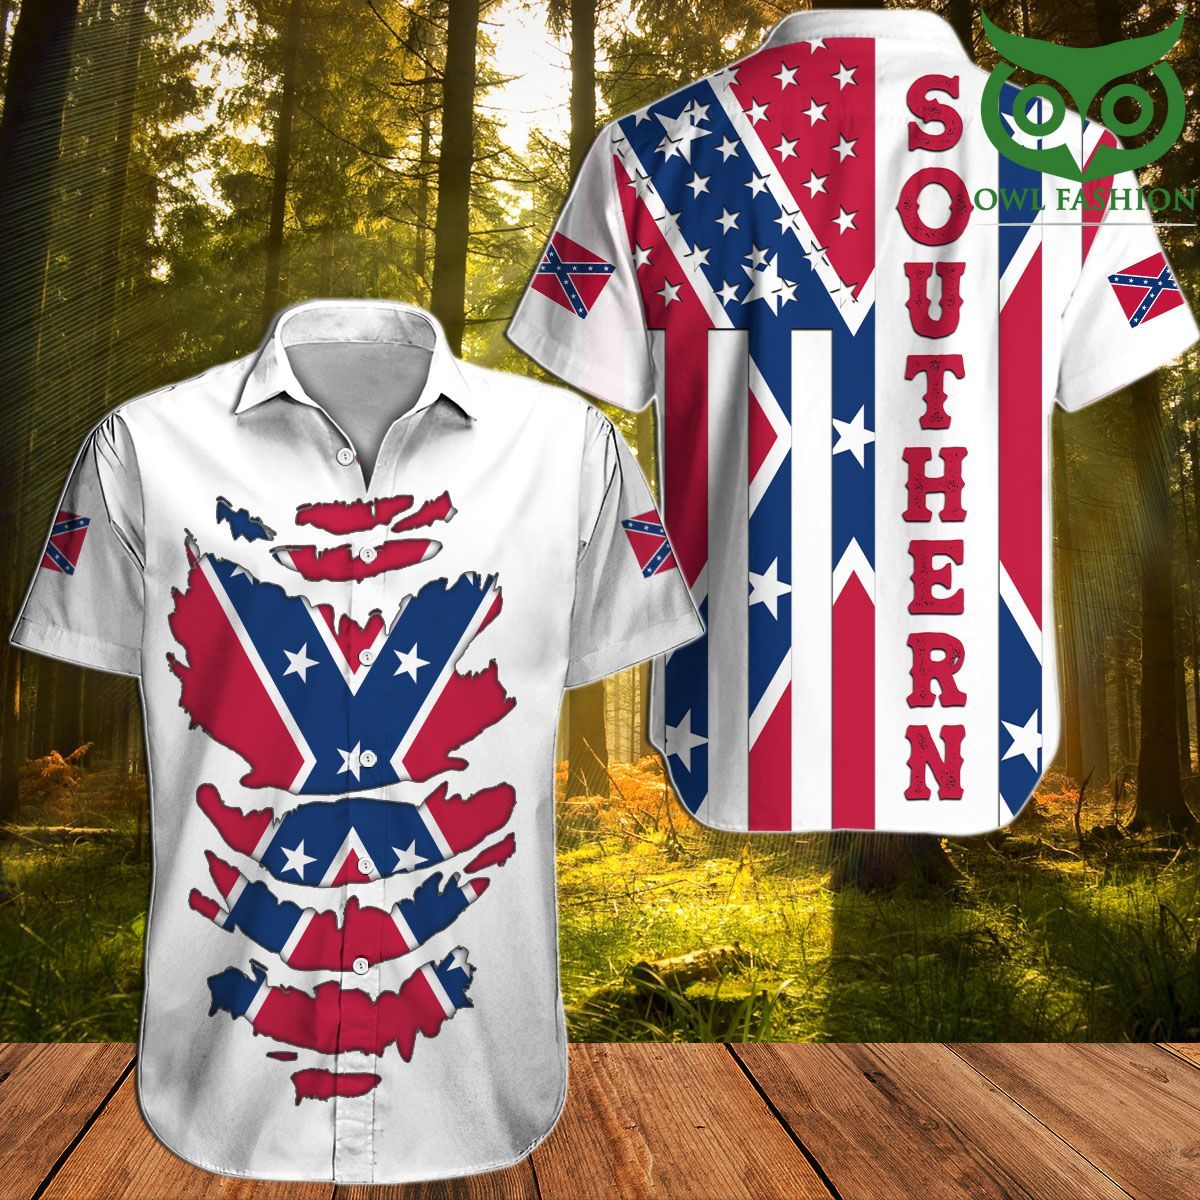 18 Southern Rebel Flag Confederate Dynamic Hawaiian shirt